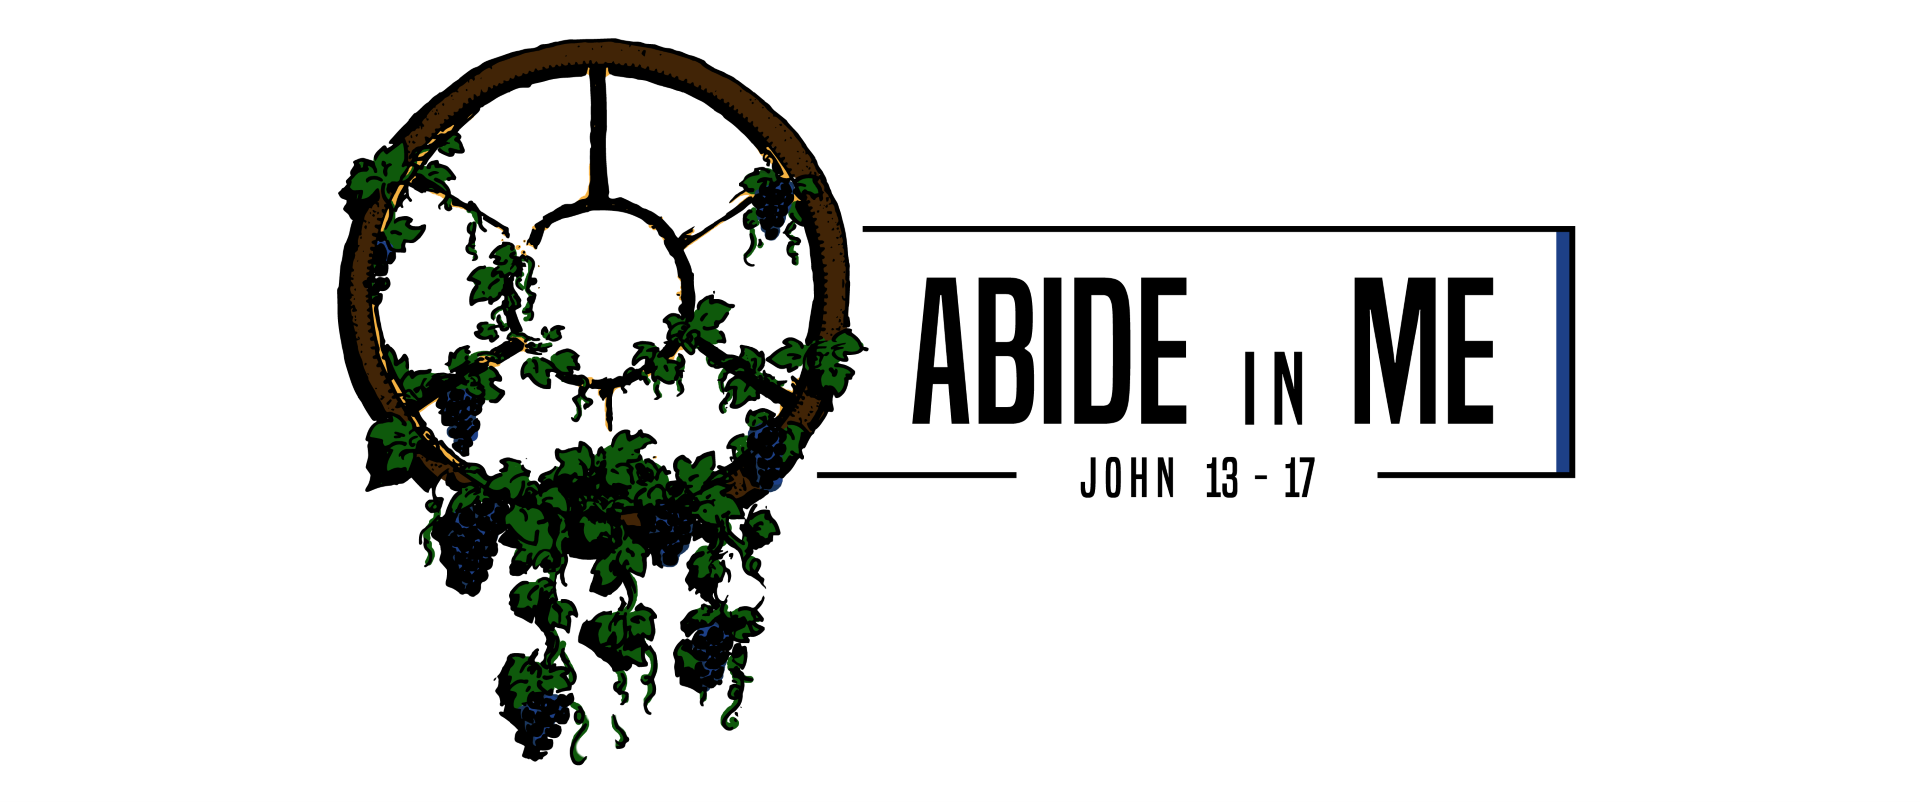 John 13-17: Abide in Me